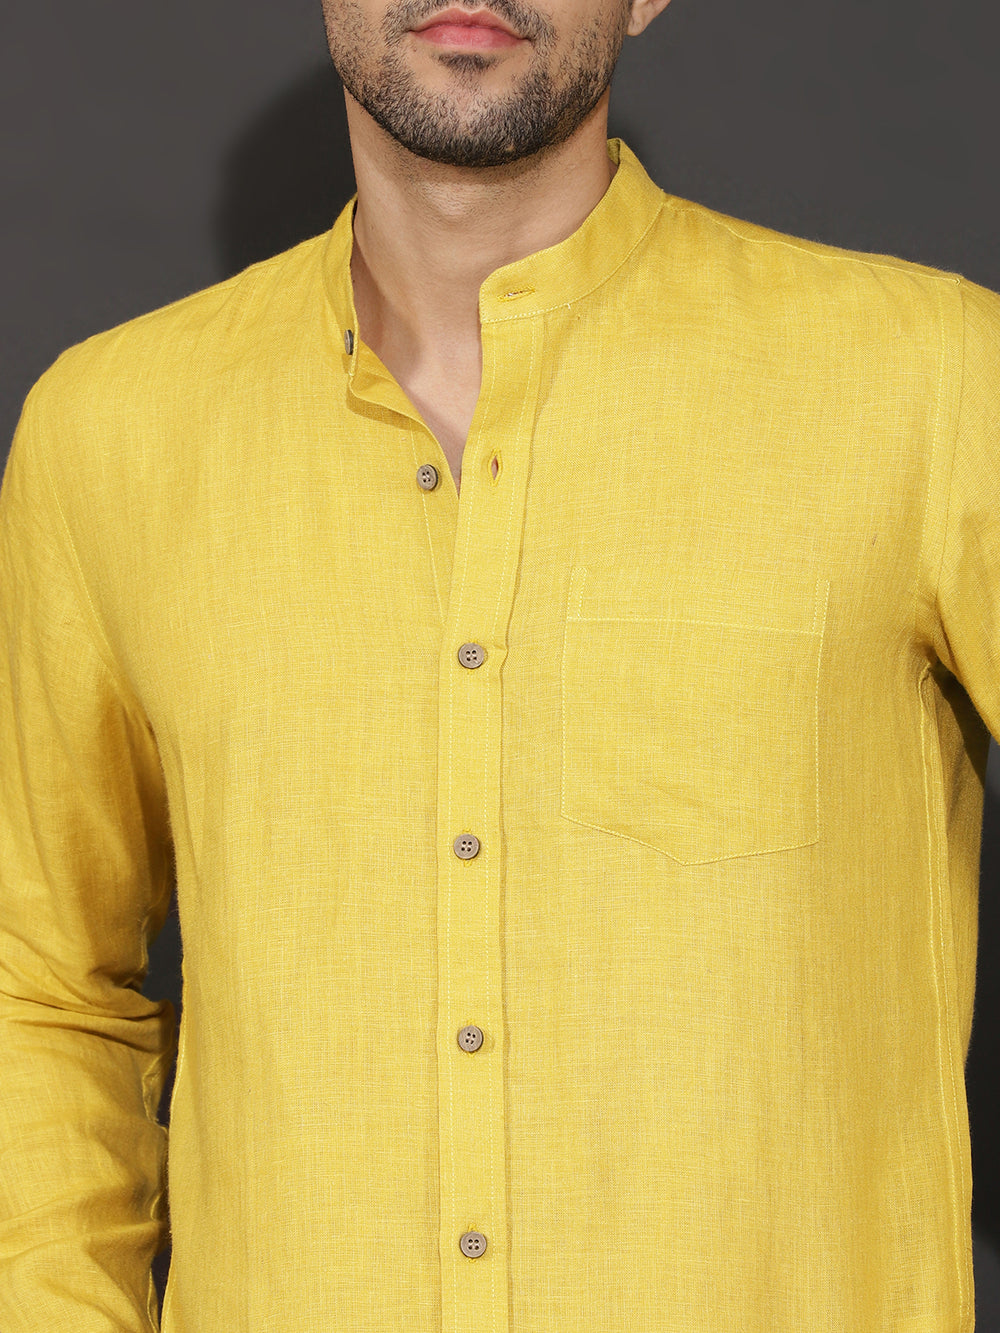 Cullen - Pure Linen Full Sleeve Shirt - Sunburst Yellow